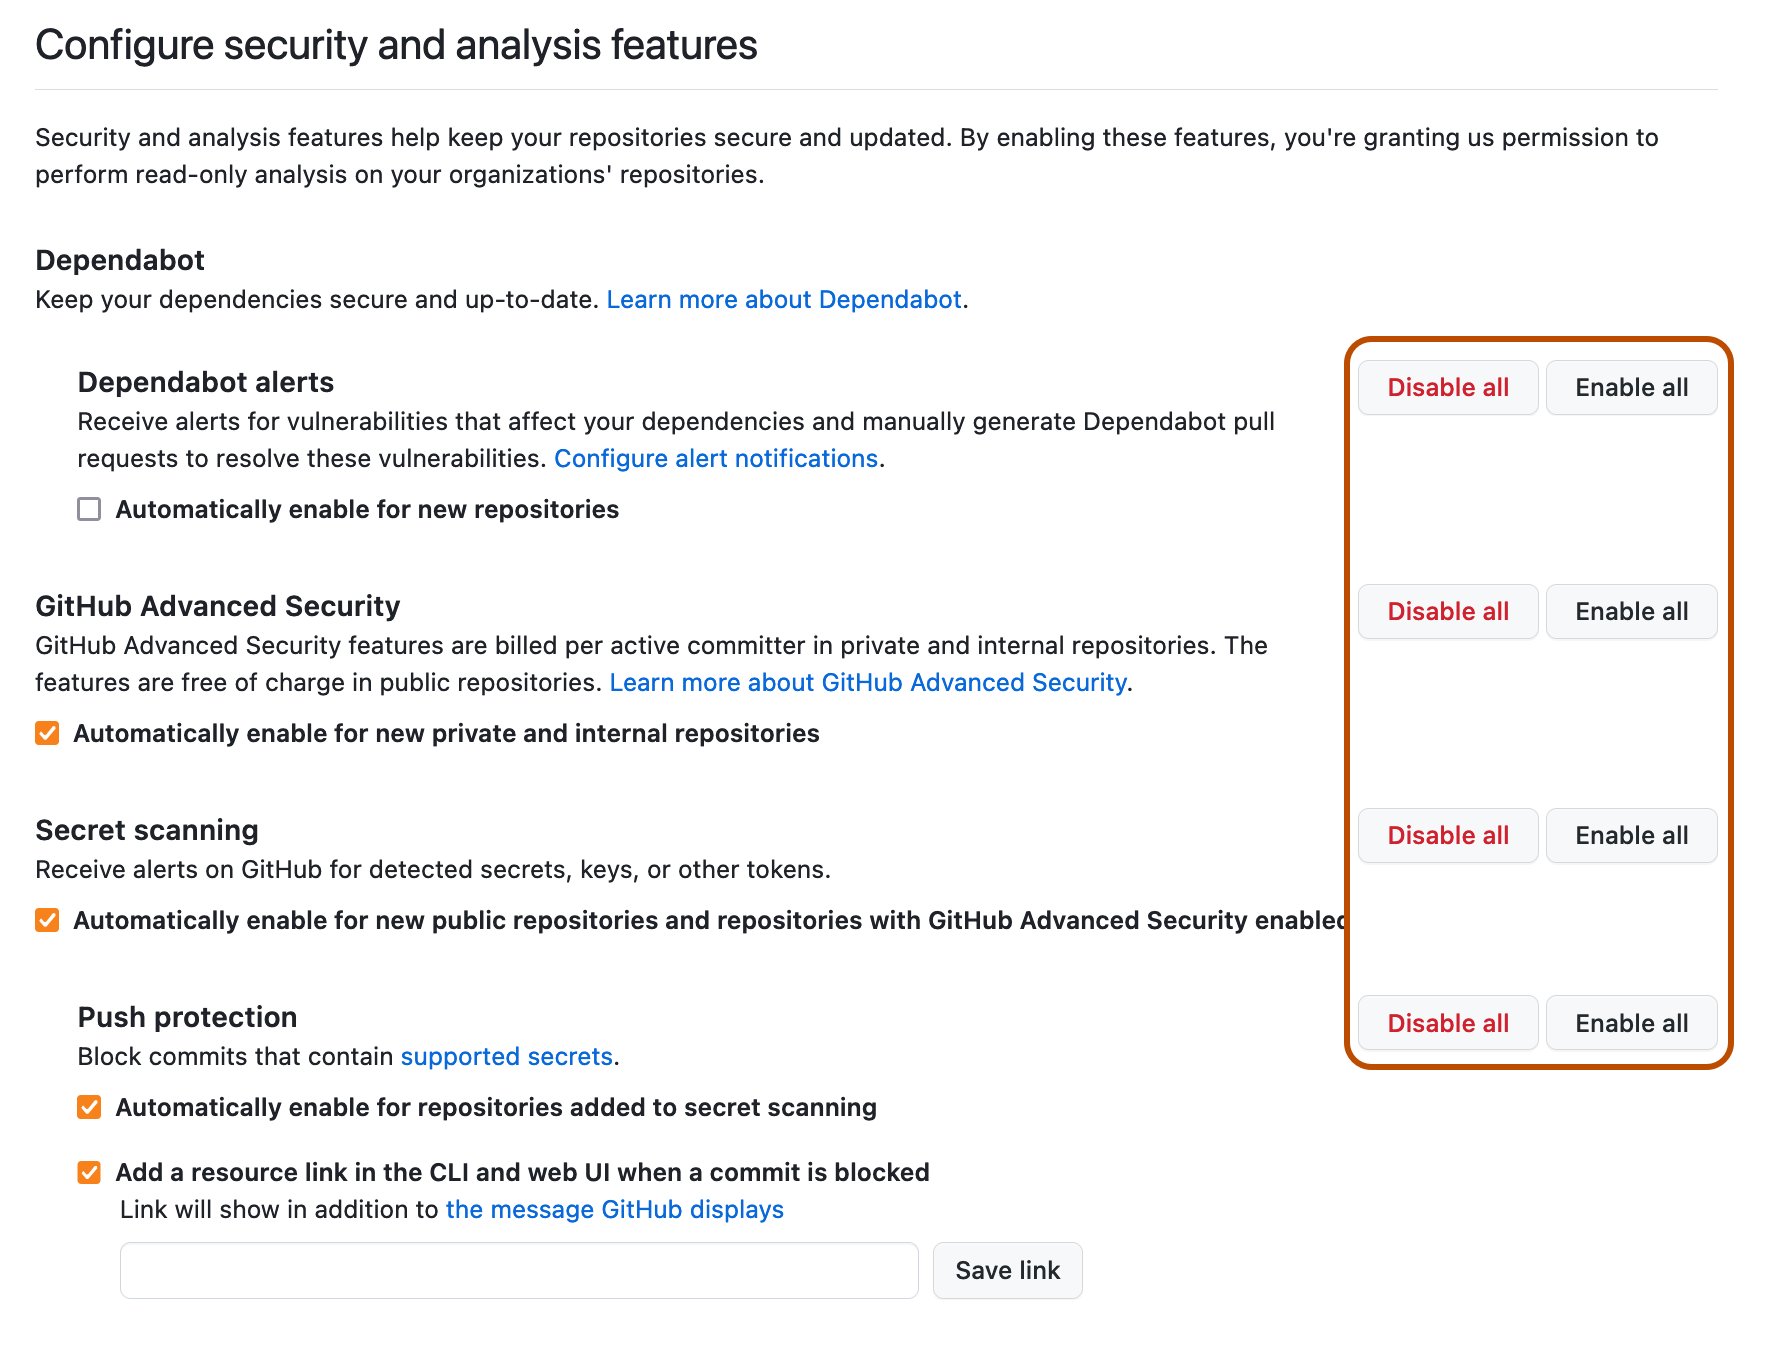 Captura de pantalla de los botones "Habilitar todo" o "Deshabilitar todo" para las características de "Configurar seguridad y análisis"